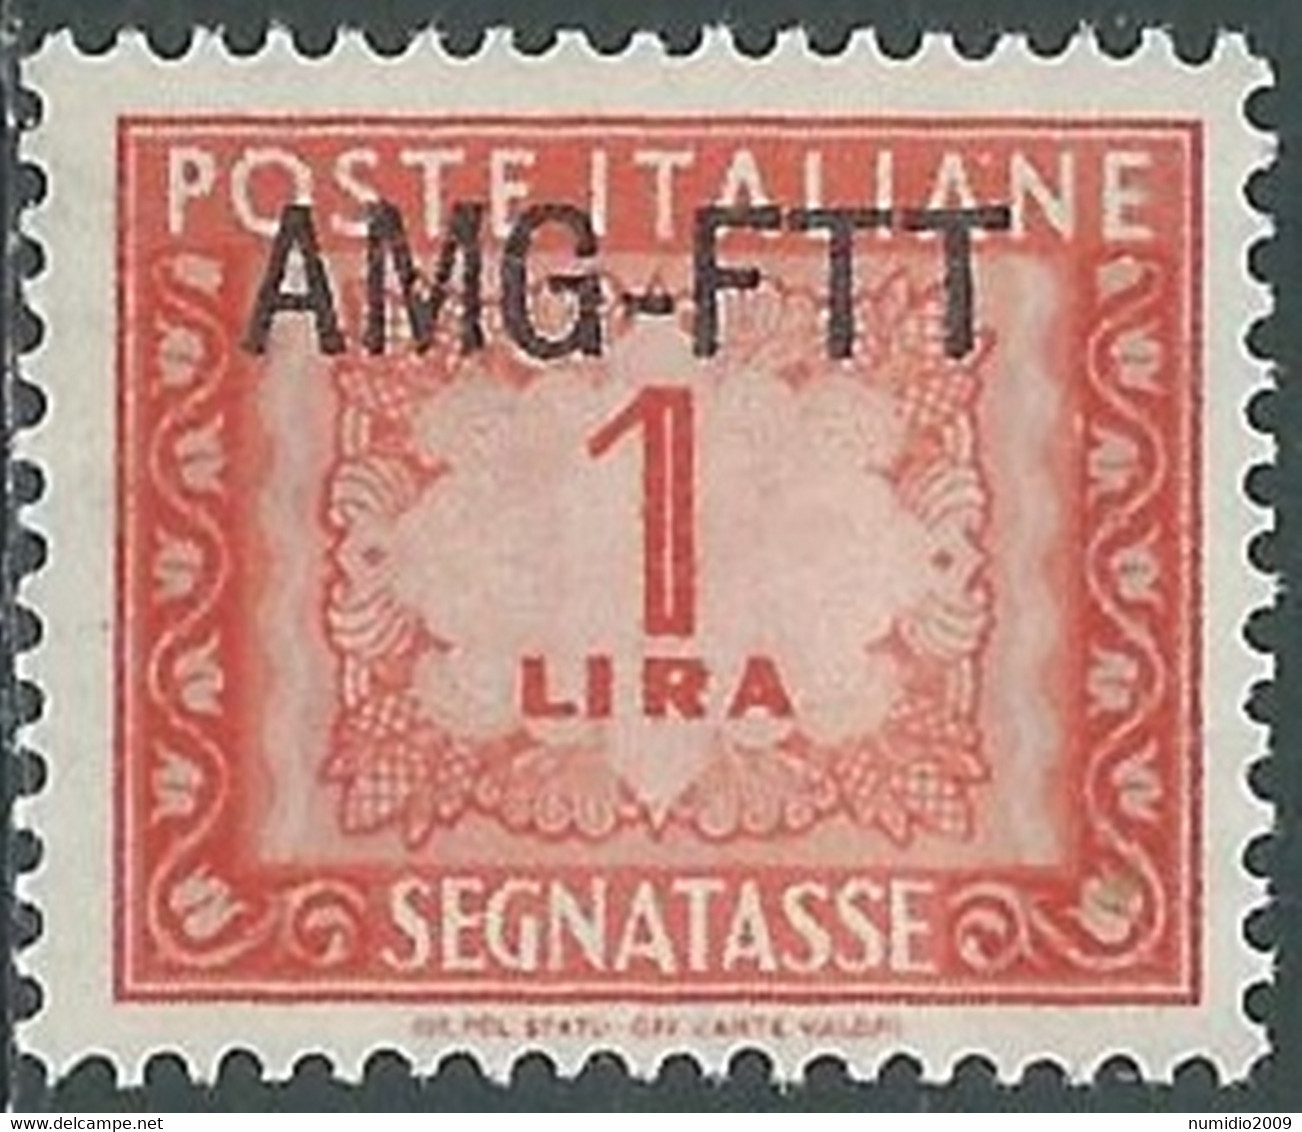 1949-54 TRIESTE A SEGNATASSE 1 LIRA MNH ** - RE10-6 - Portomarken